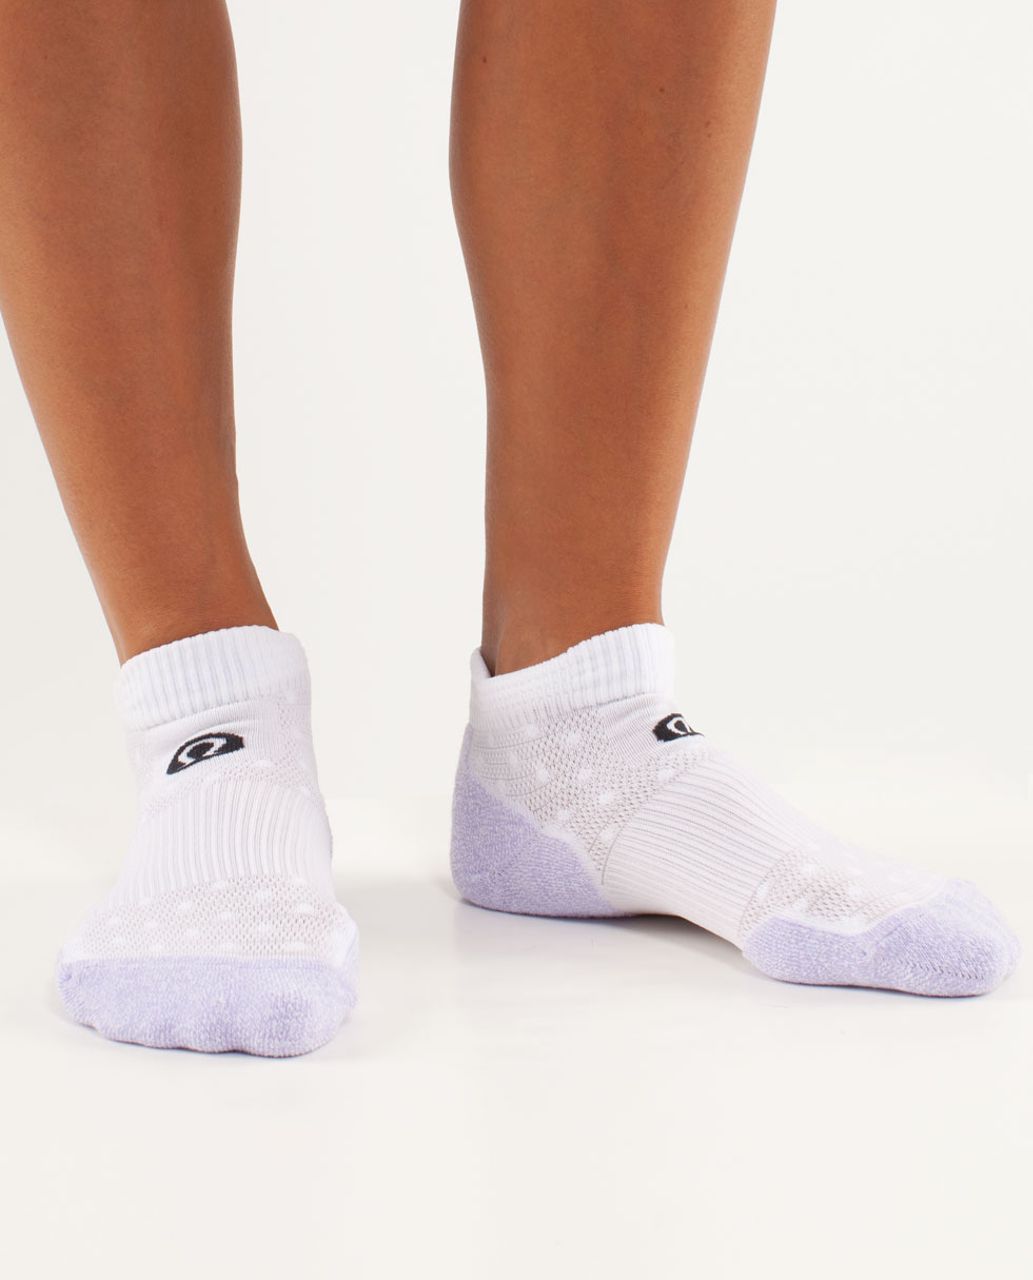 Lululemon Women's Ultimate Padded Run Sock - Lilac / White White High Noon Dot